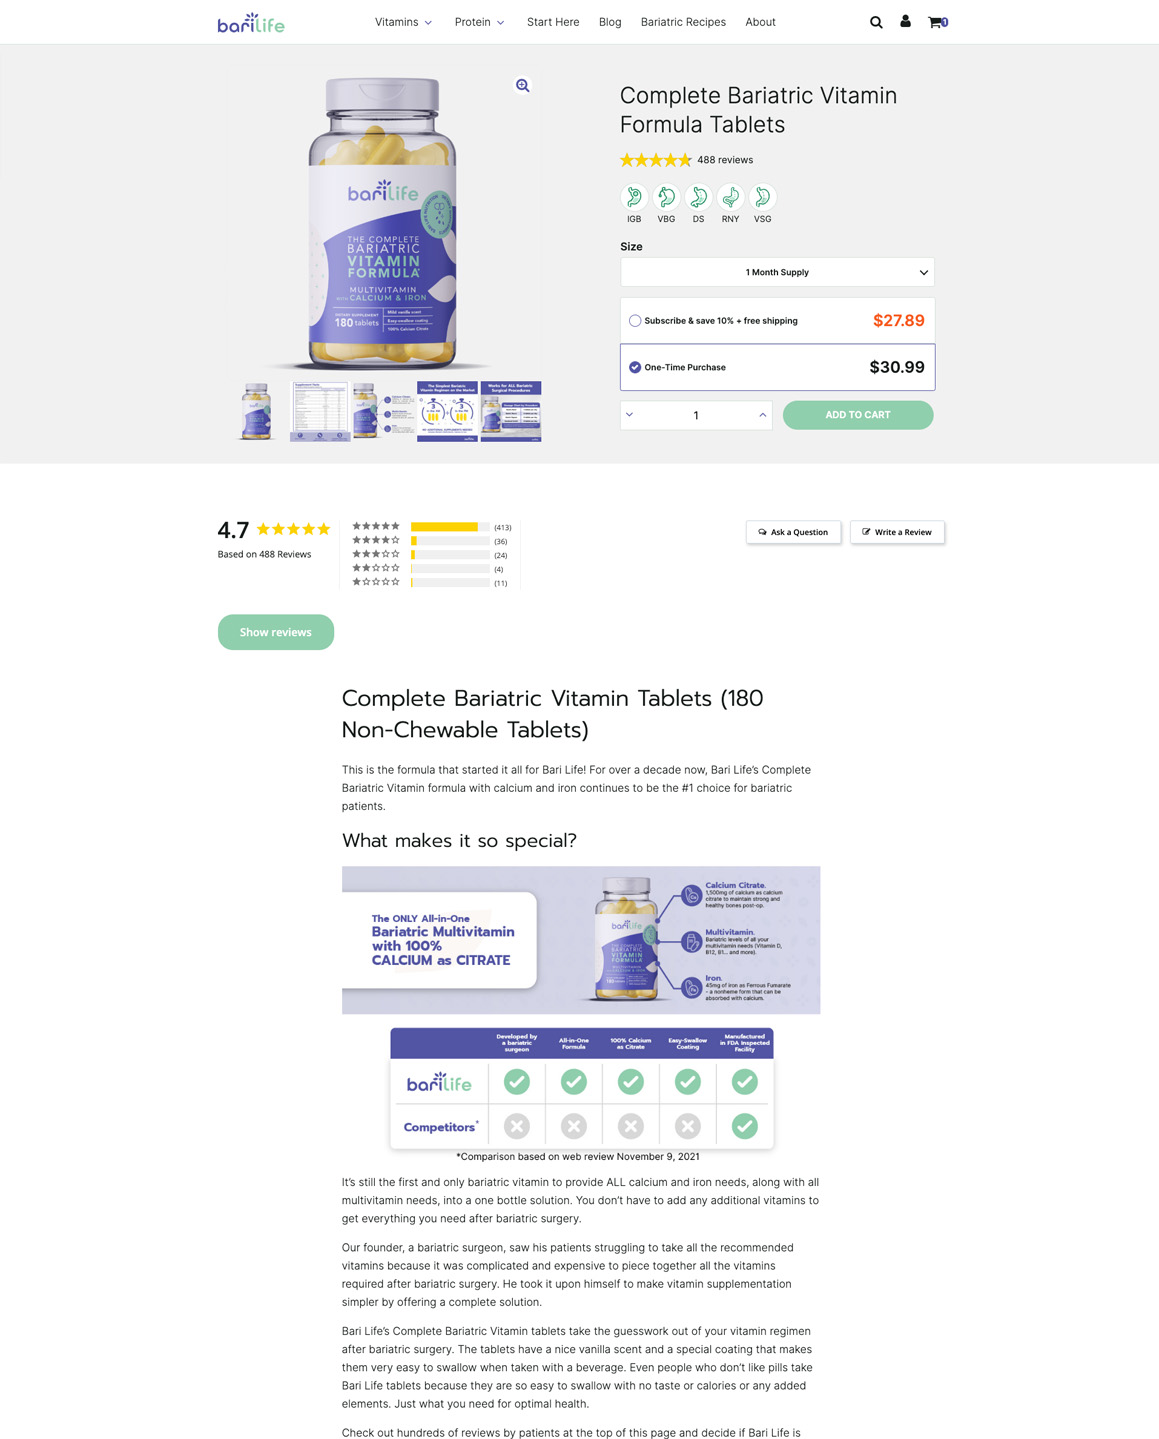 Barilife WooCommerce Product Page Layout Desktop